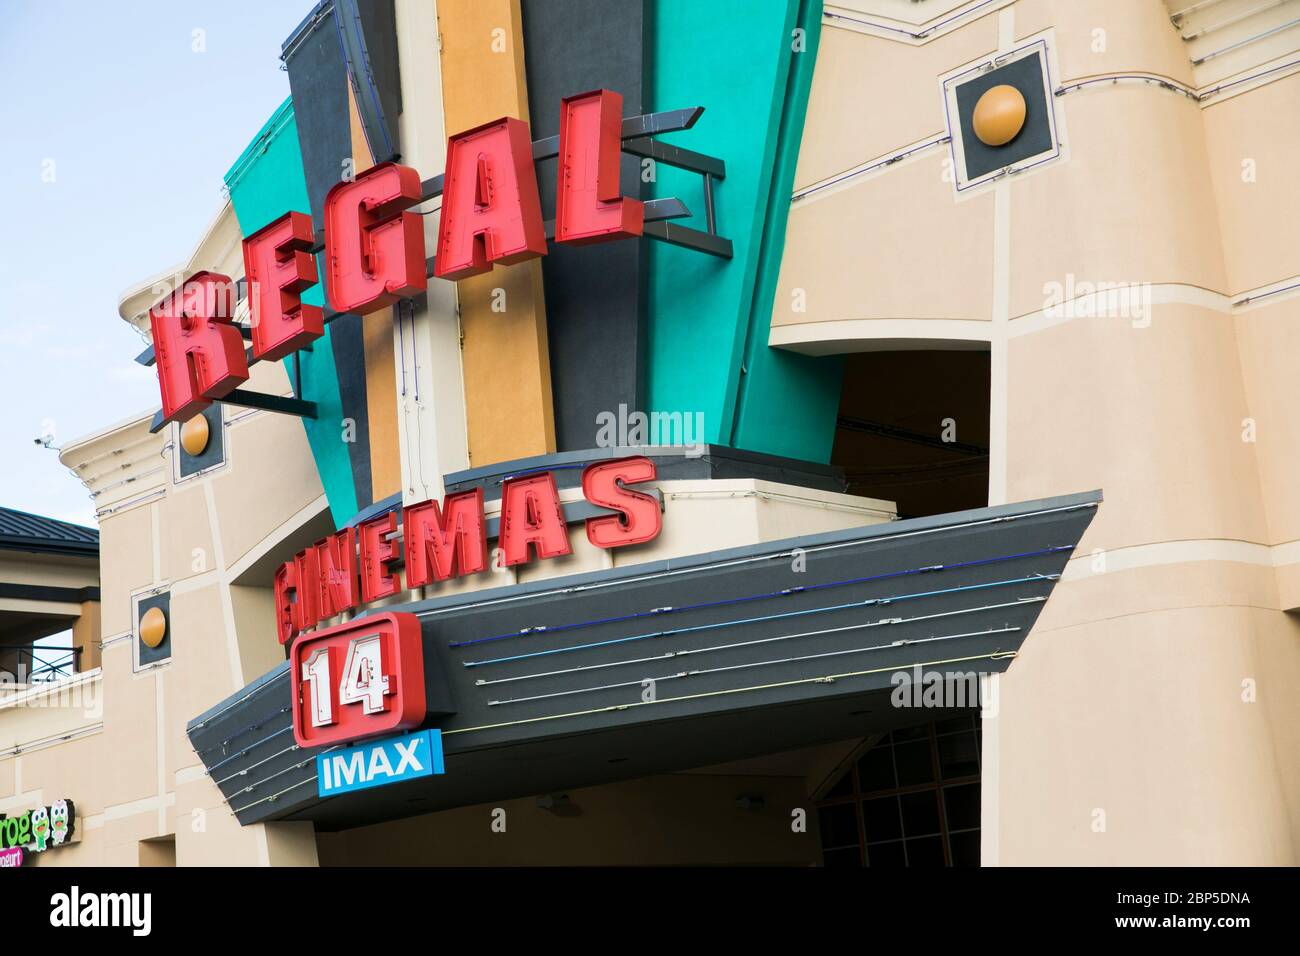 Un logo à l'extérieur d'un cinéma Regal Cinemas situé à Richmond, en Virginie, le 13 mai 2020. Banque D'Images